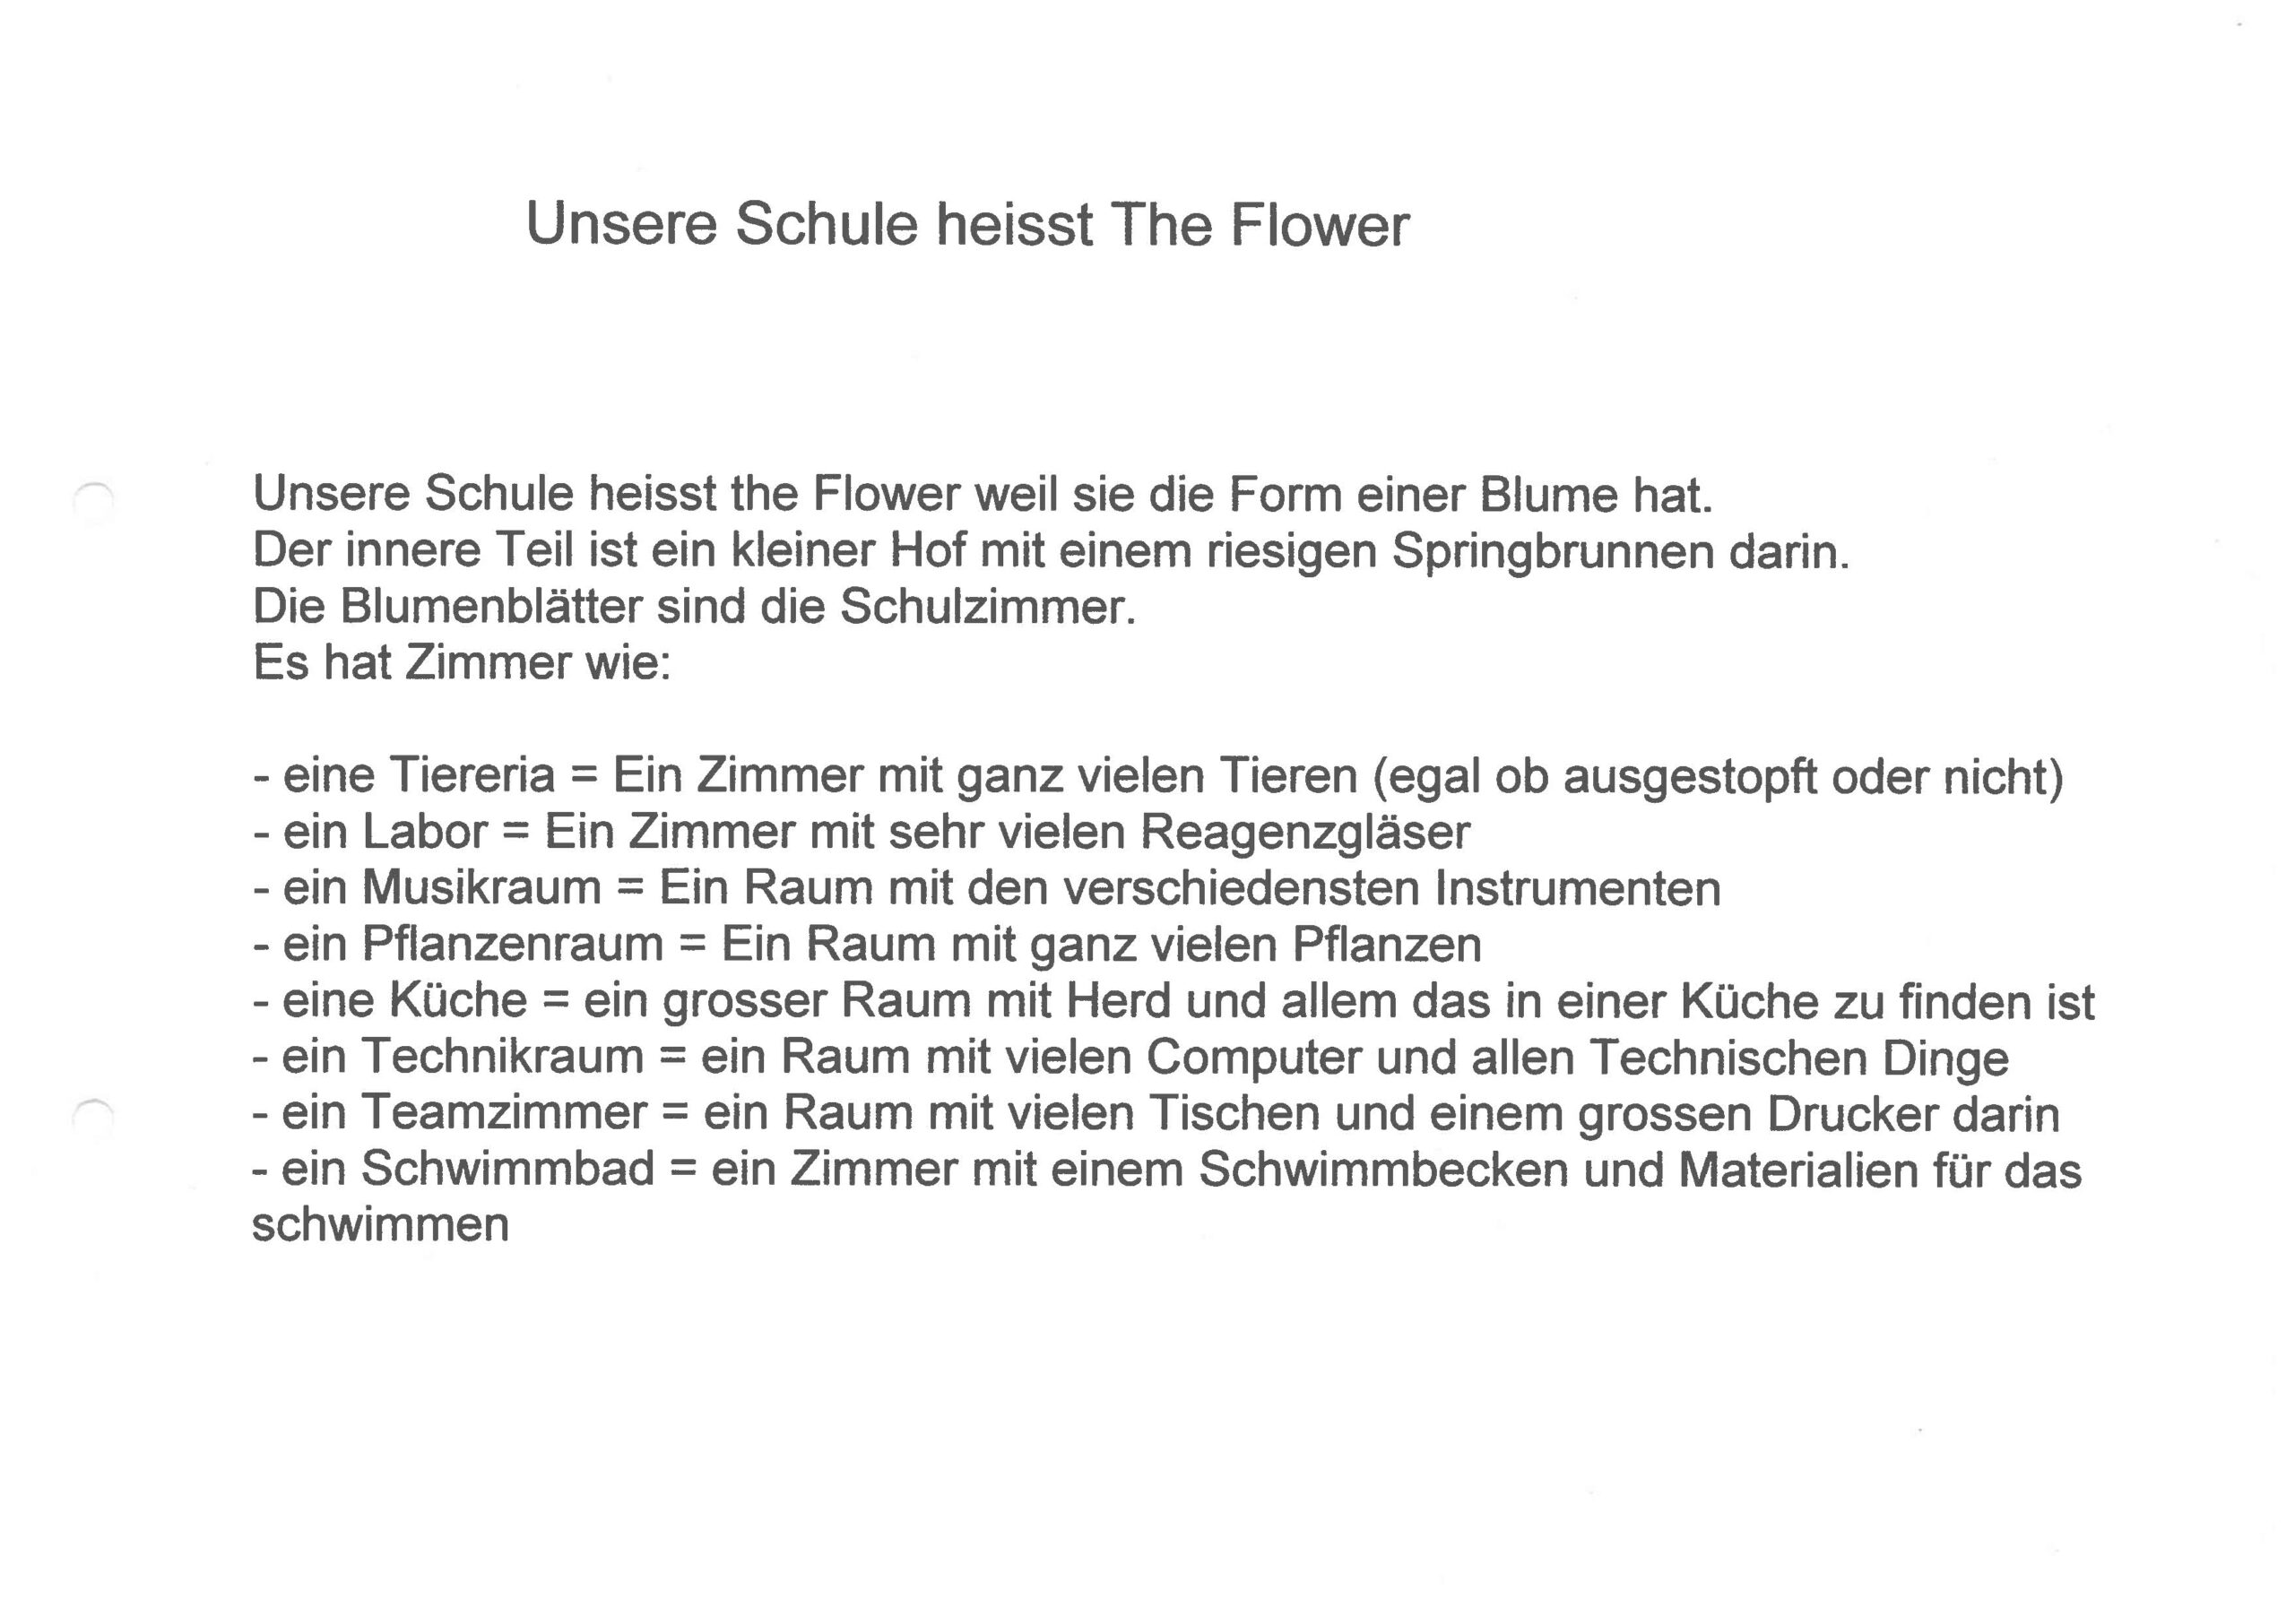 The Flower (Bilderbuch)_Page_02